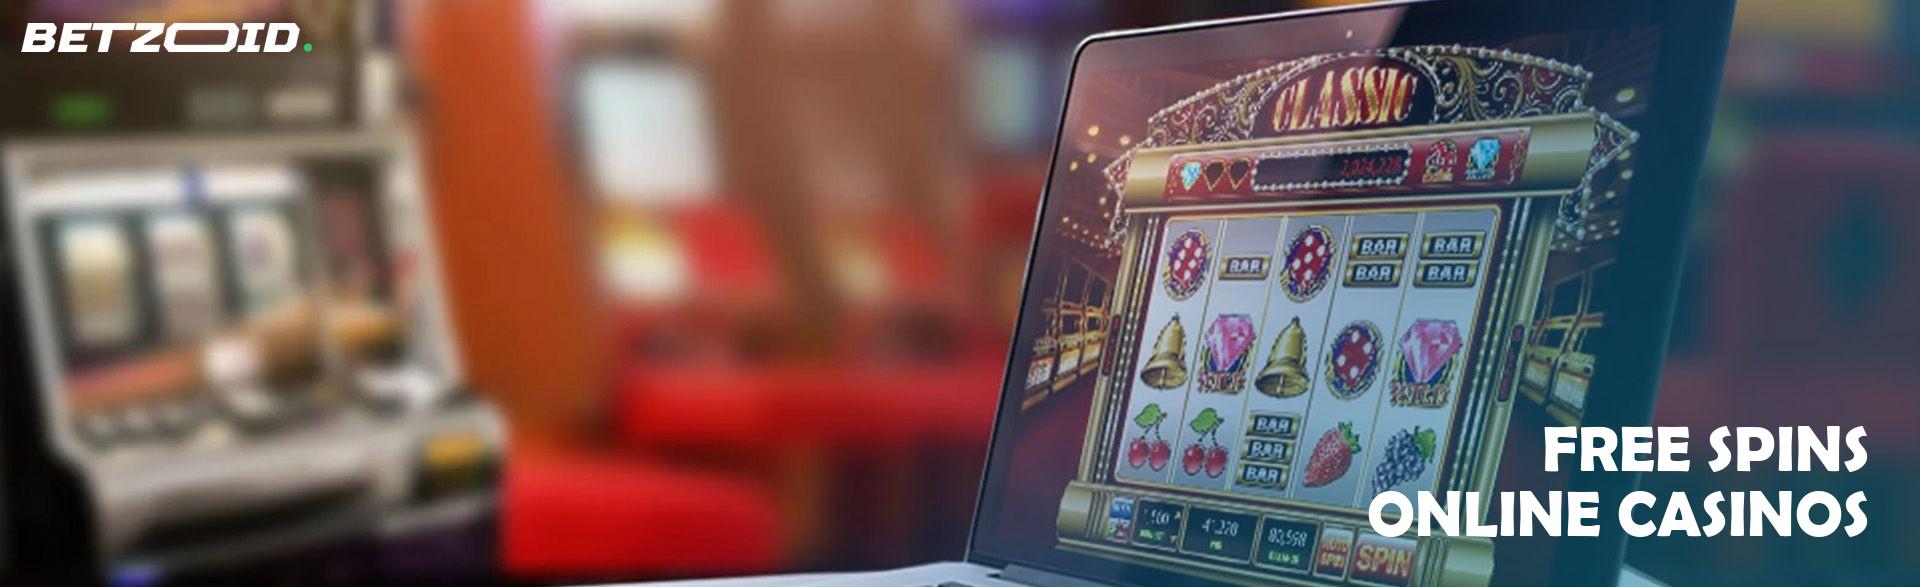 Free Spins Online Casinos.